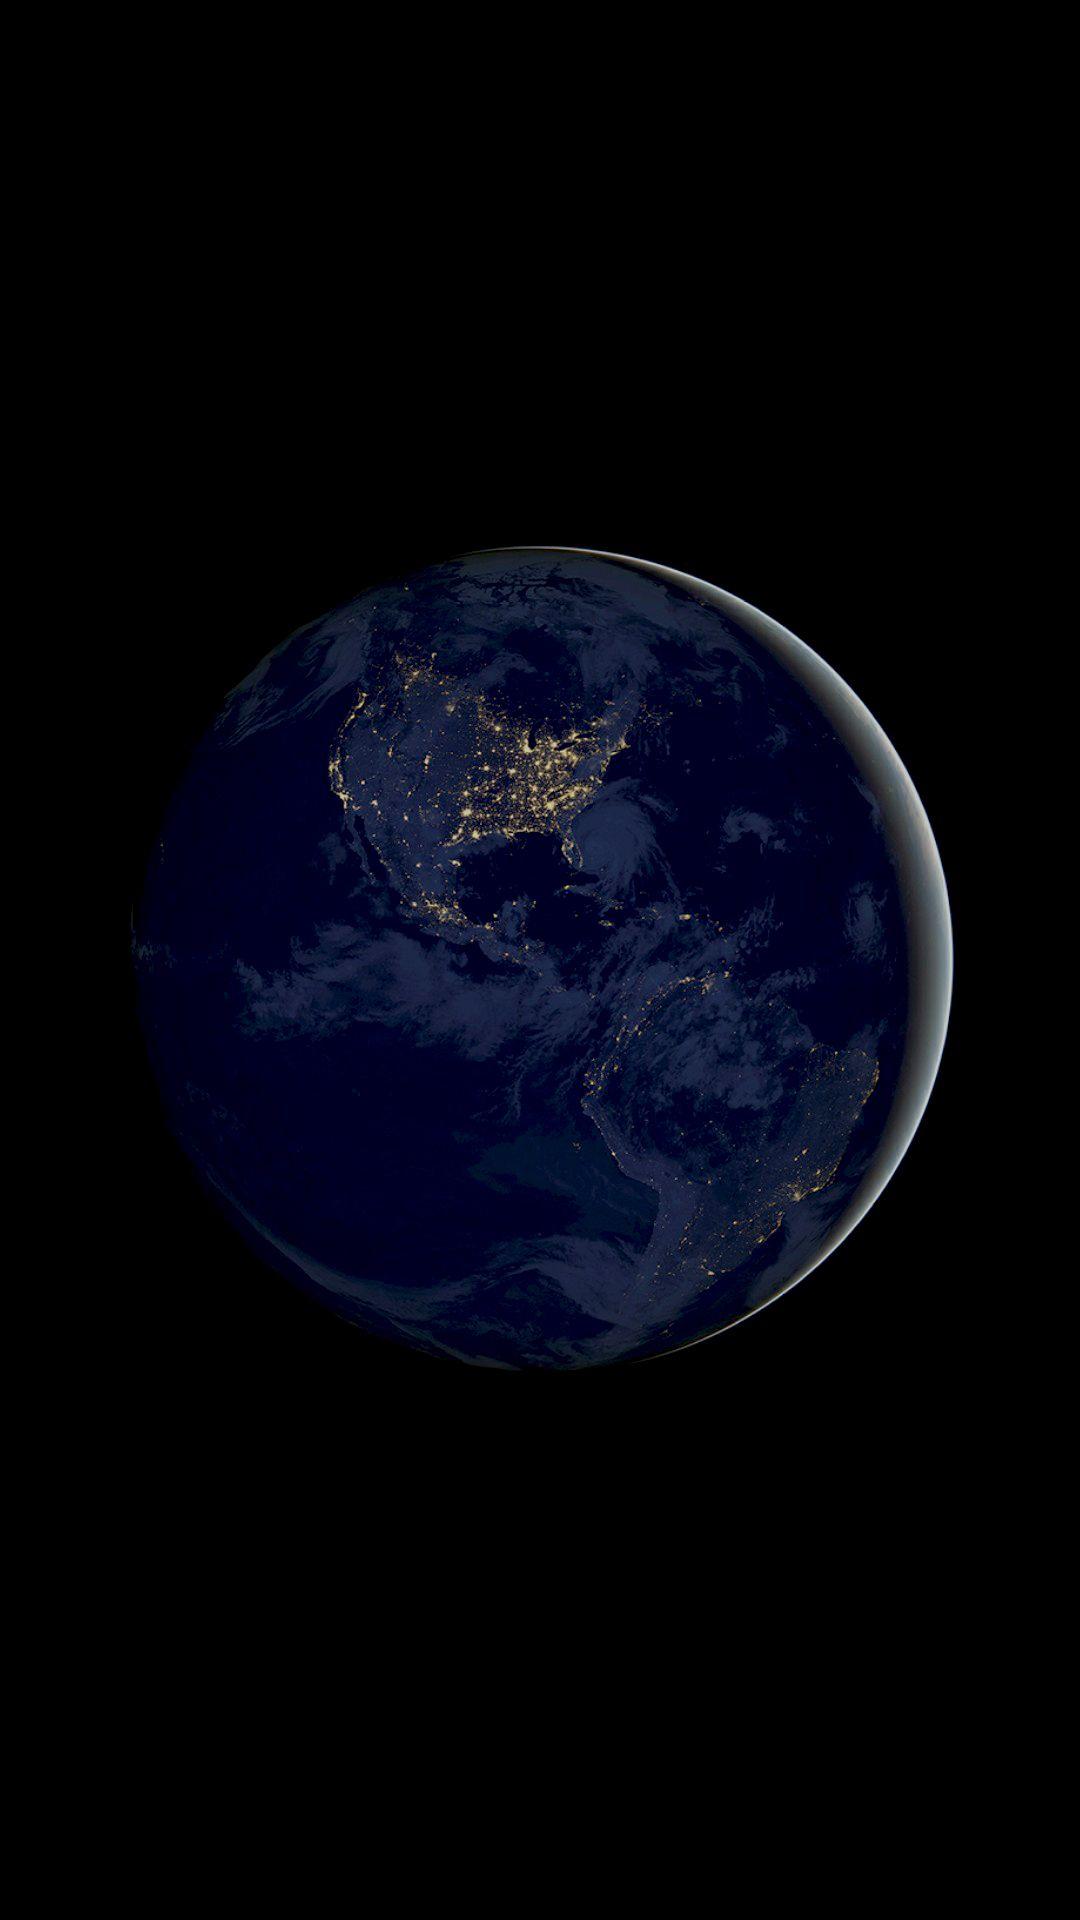 Earth Planet 4K AMOLED Wallpaper. Обои для iphone, Обои андроид, Обои